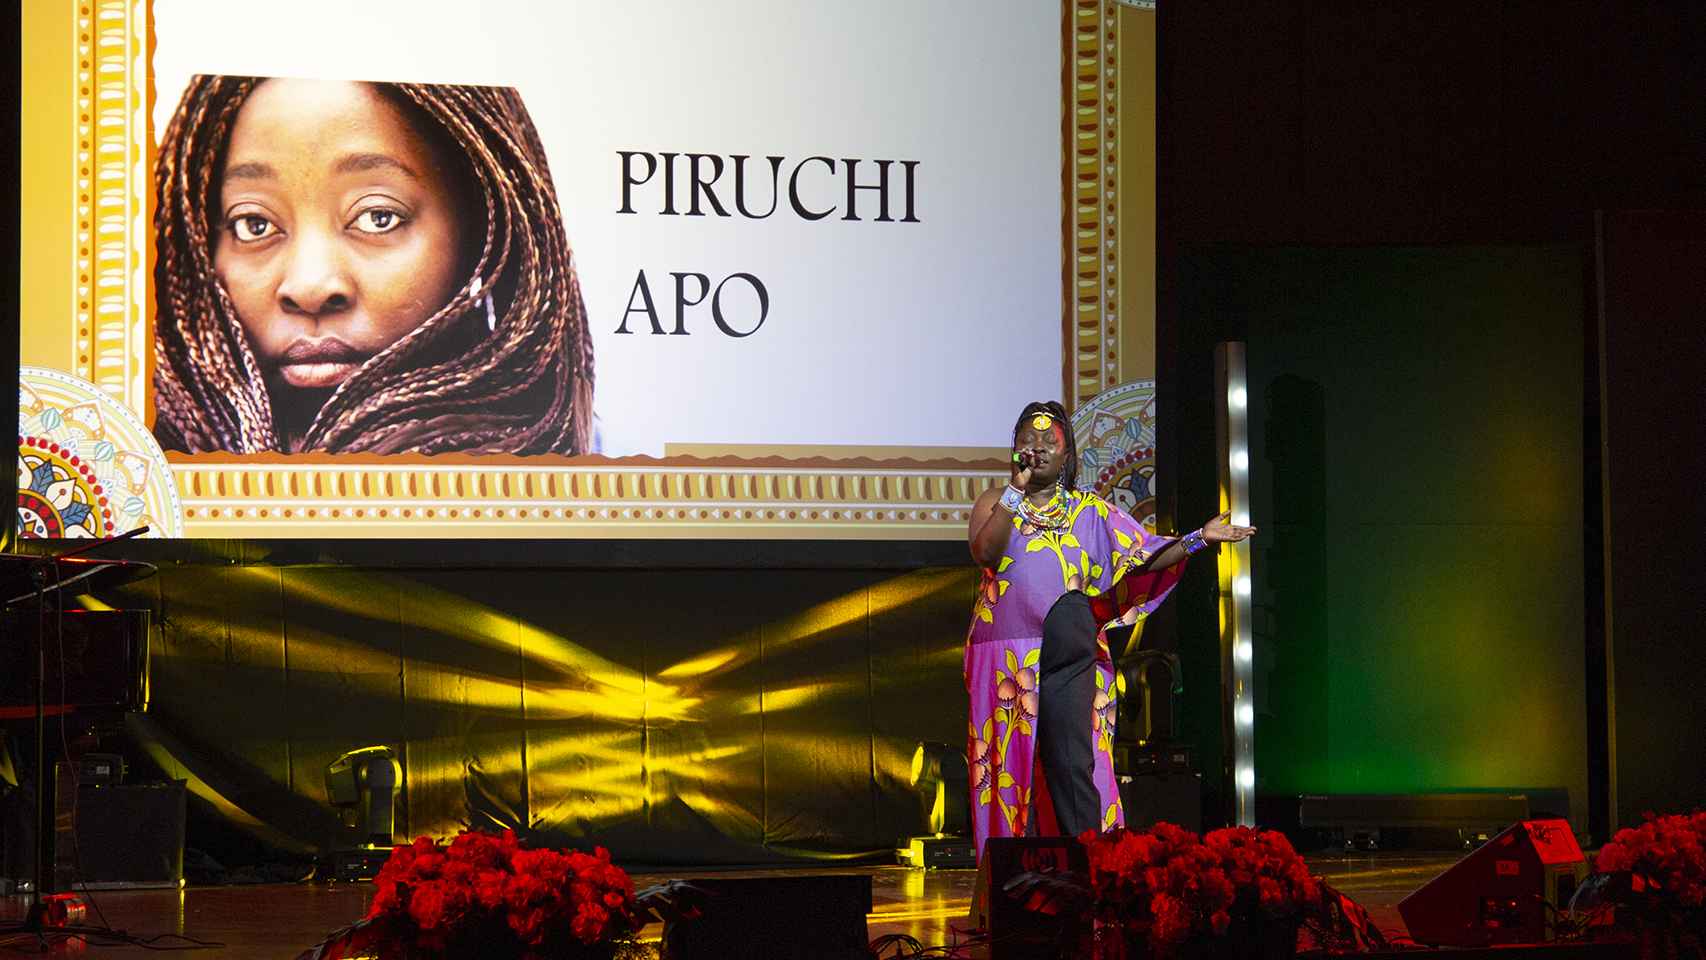 La cantante Piruchi Apo.